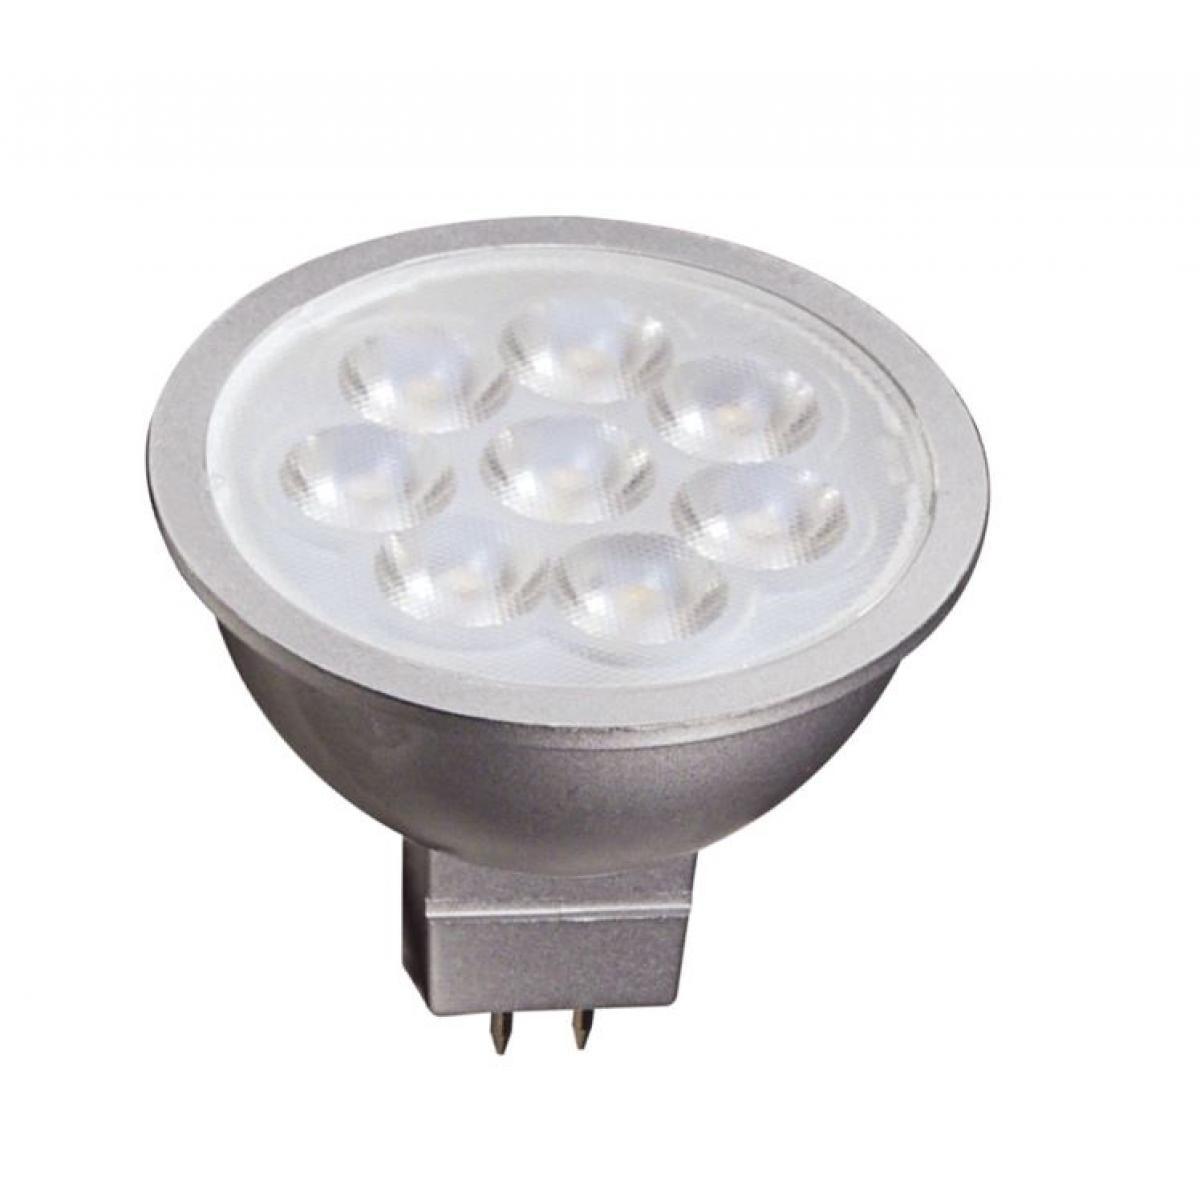 MR16 Reflector LED bulb, 6 watt, 450 Lumens, 2700K, GU5.3 Base, 40 Deg. Flood - Bees Lighting